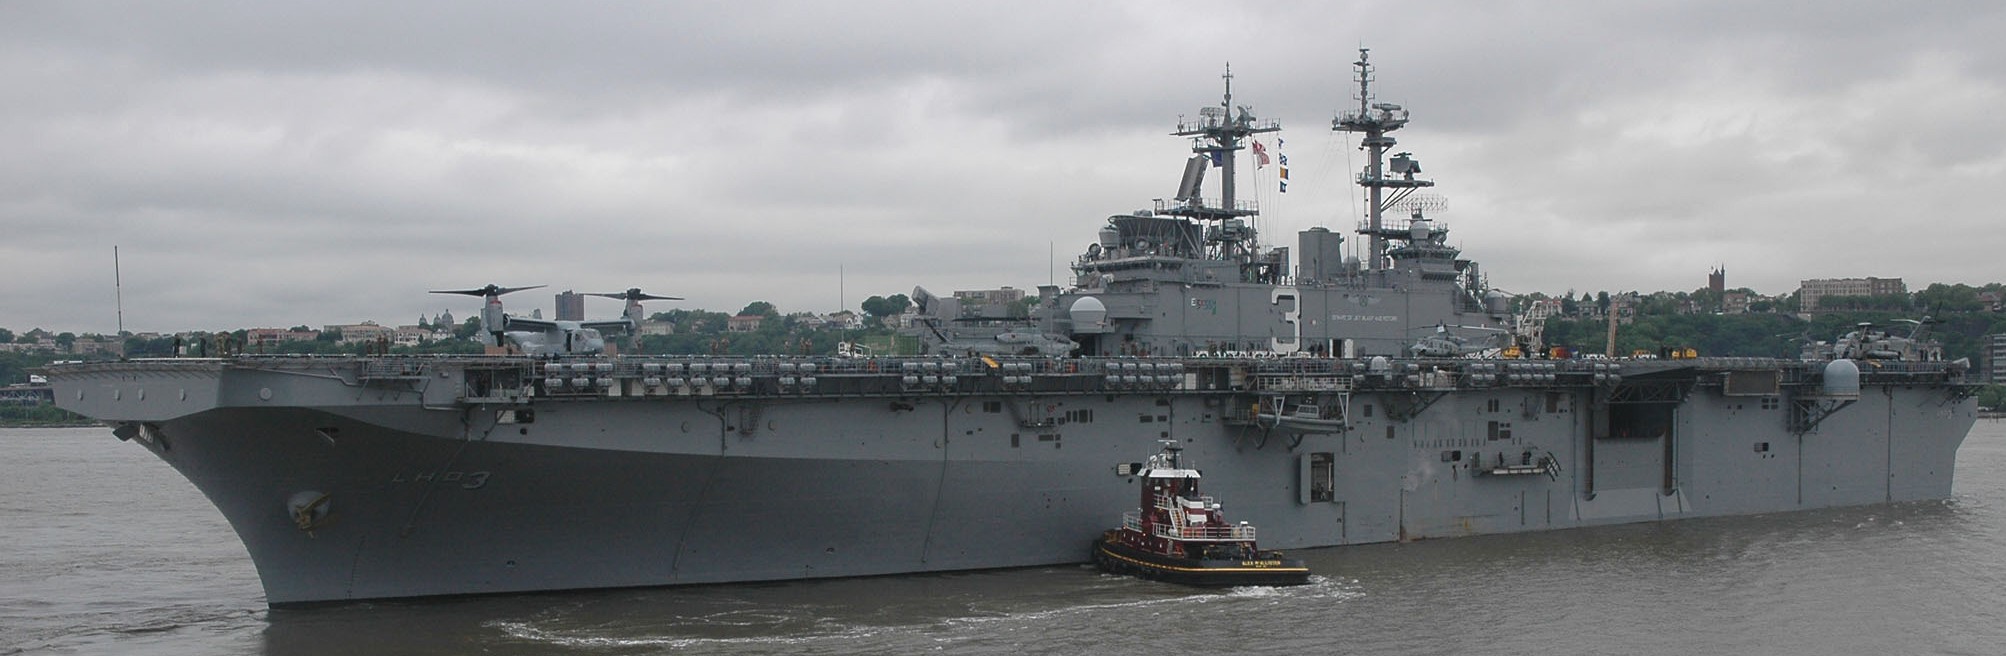 lhd-3 uss kearsarge wasp class amphibious assault ship landing dock us navy fleet week new york 174